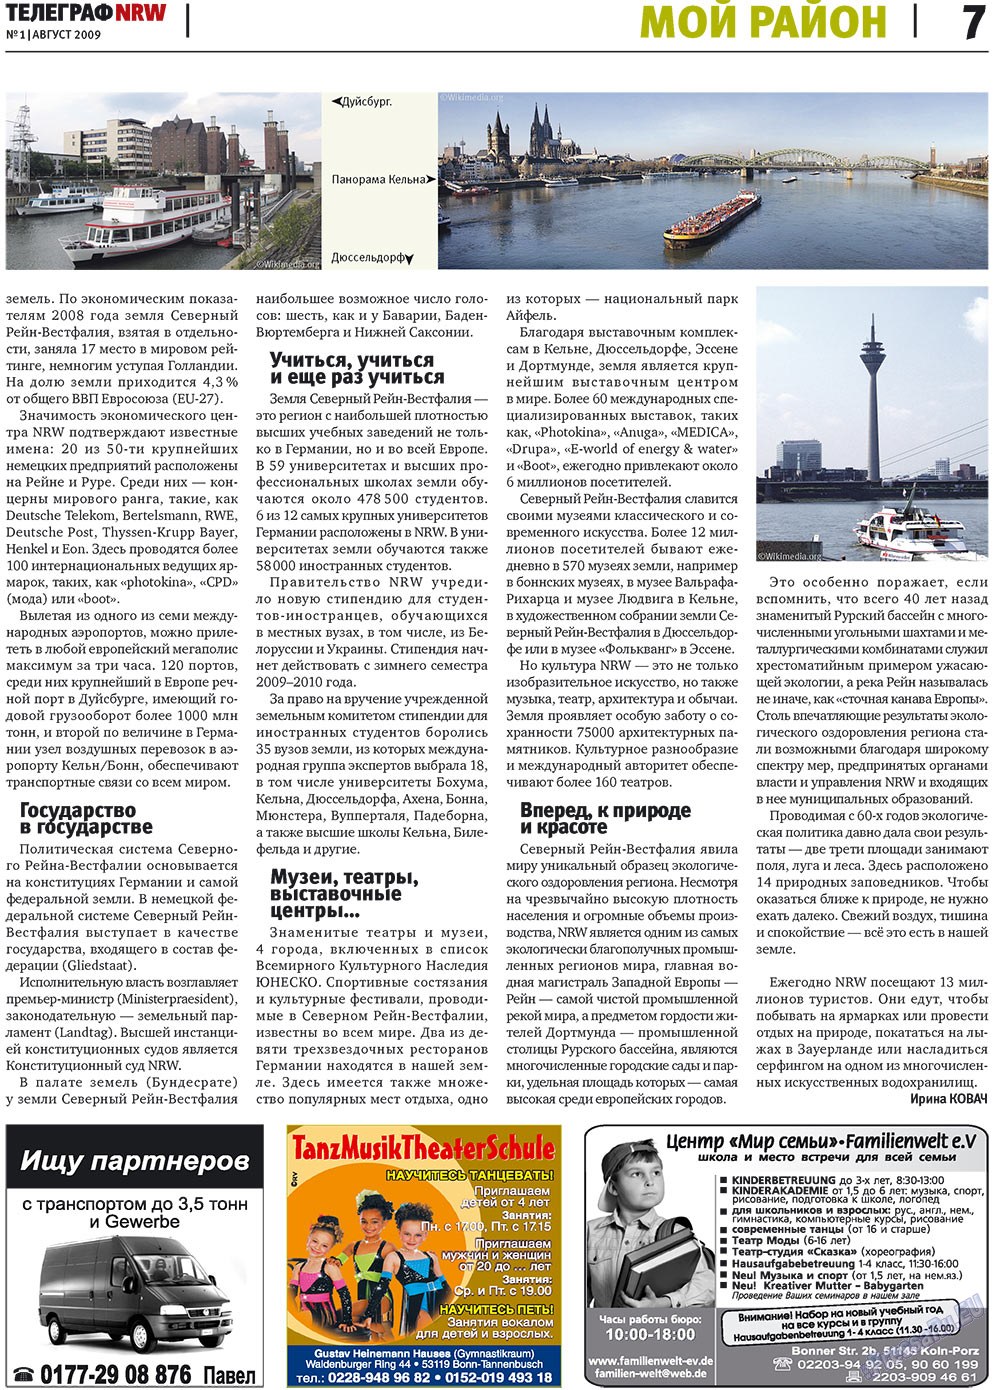 Телеграф NRW (газета). 2009 год, номер 1, стр. 7